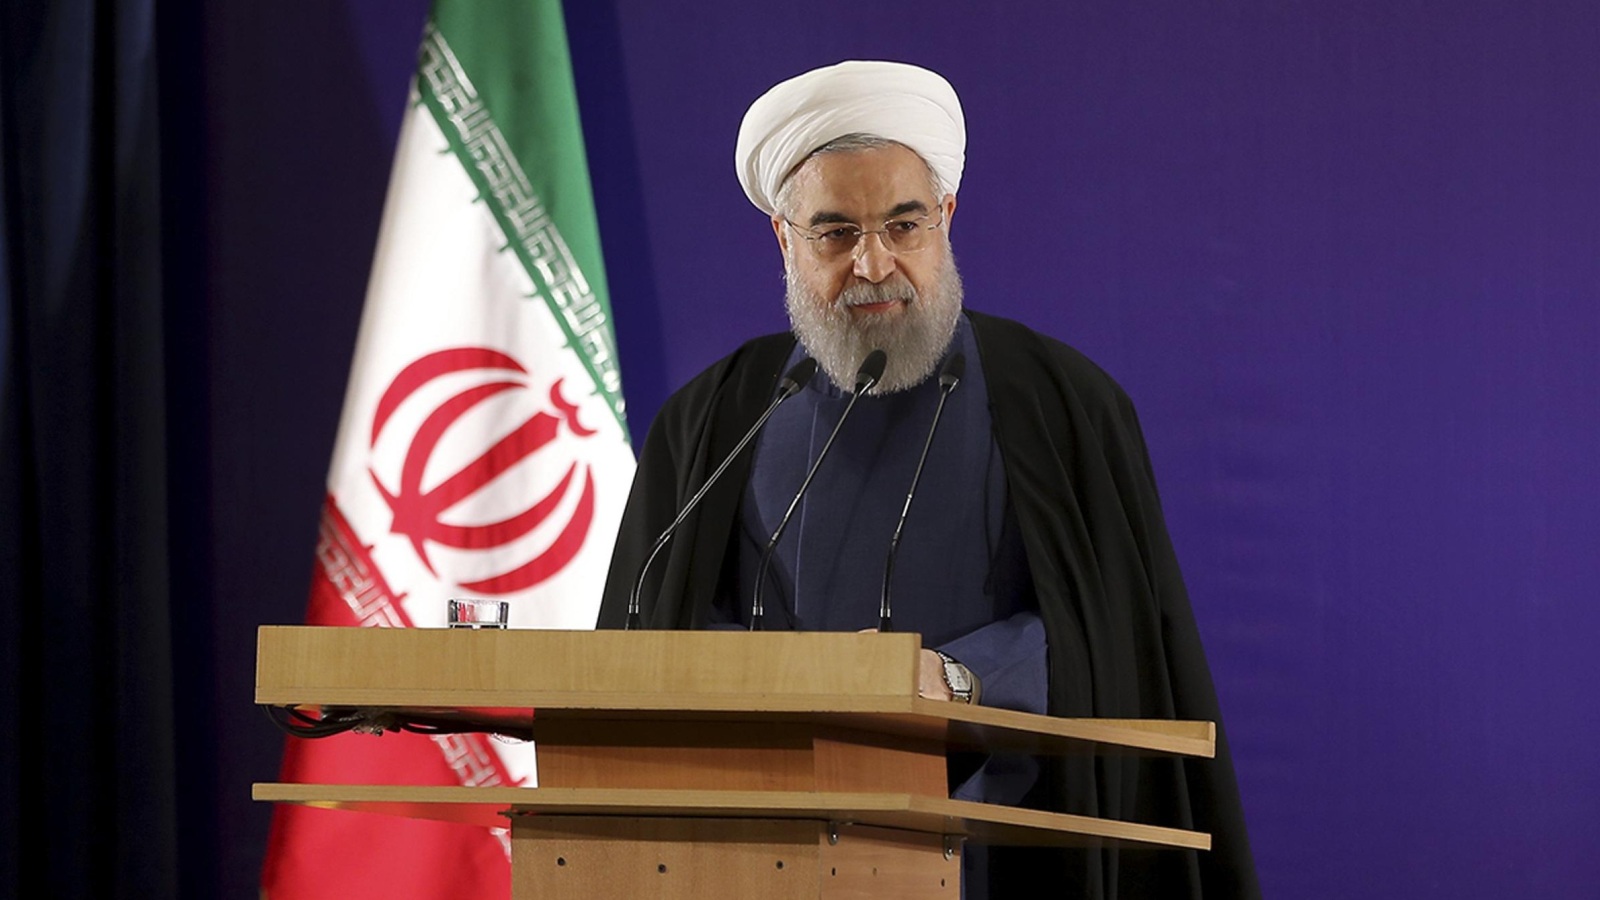 الرئيس الإيراني حسن روحاني يخوض رئاسيات مايو/أيار 2017 للحصول على ولاية ثانية (أسوشيتد برس)